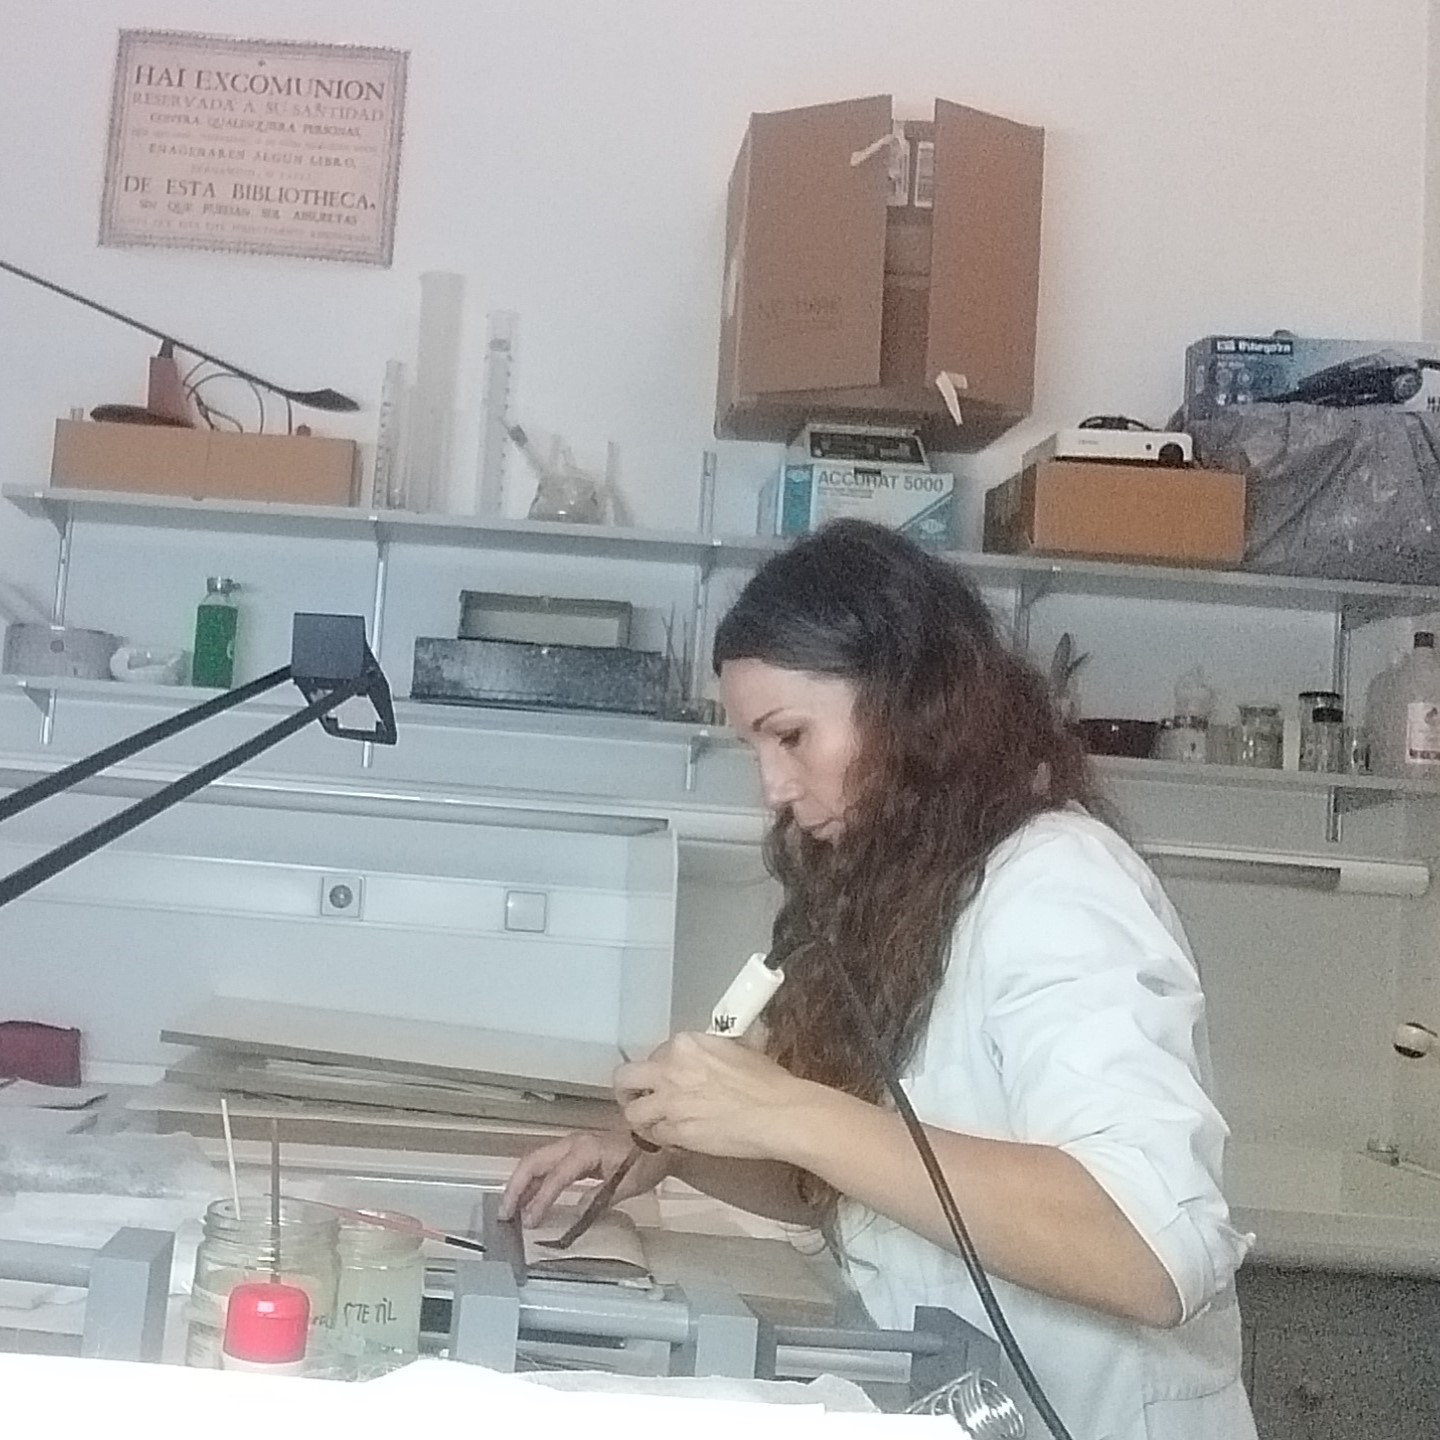 Natalia recibiendo a una visita en el taller de restauración de papel